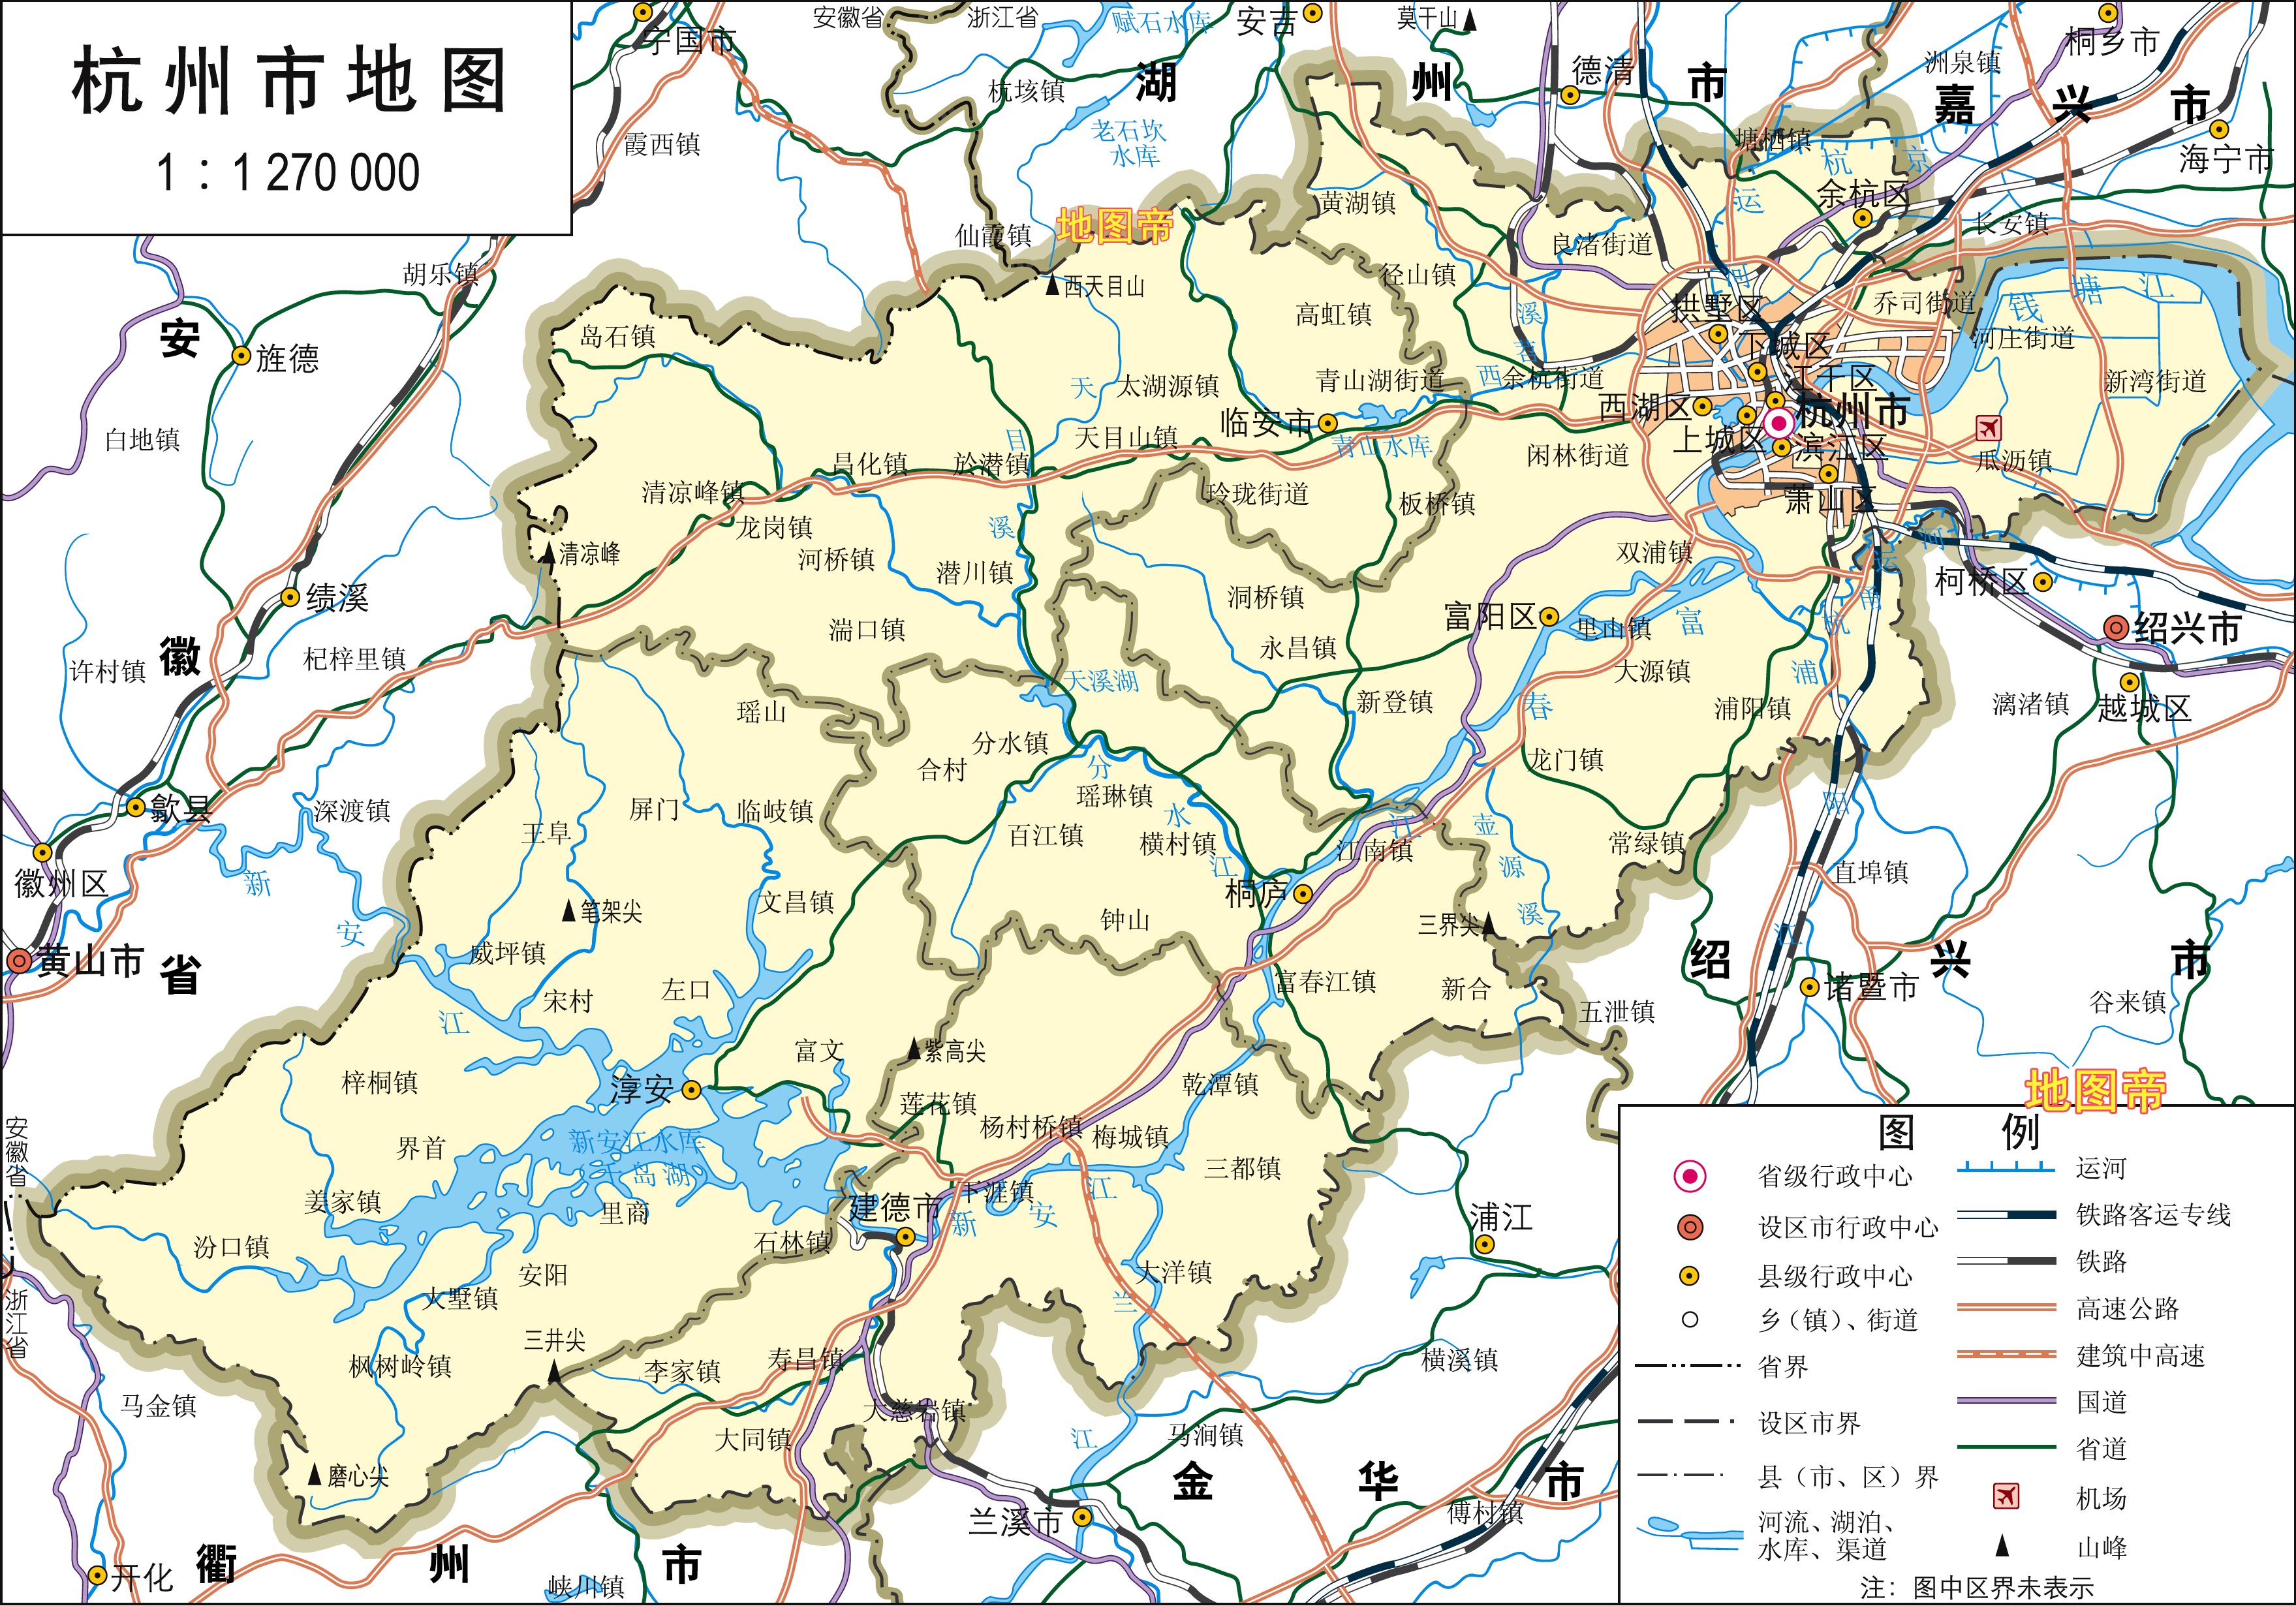 杭州十大区分布图地图图片